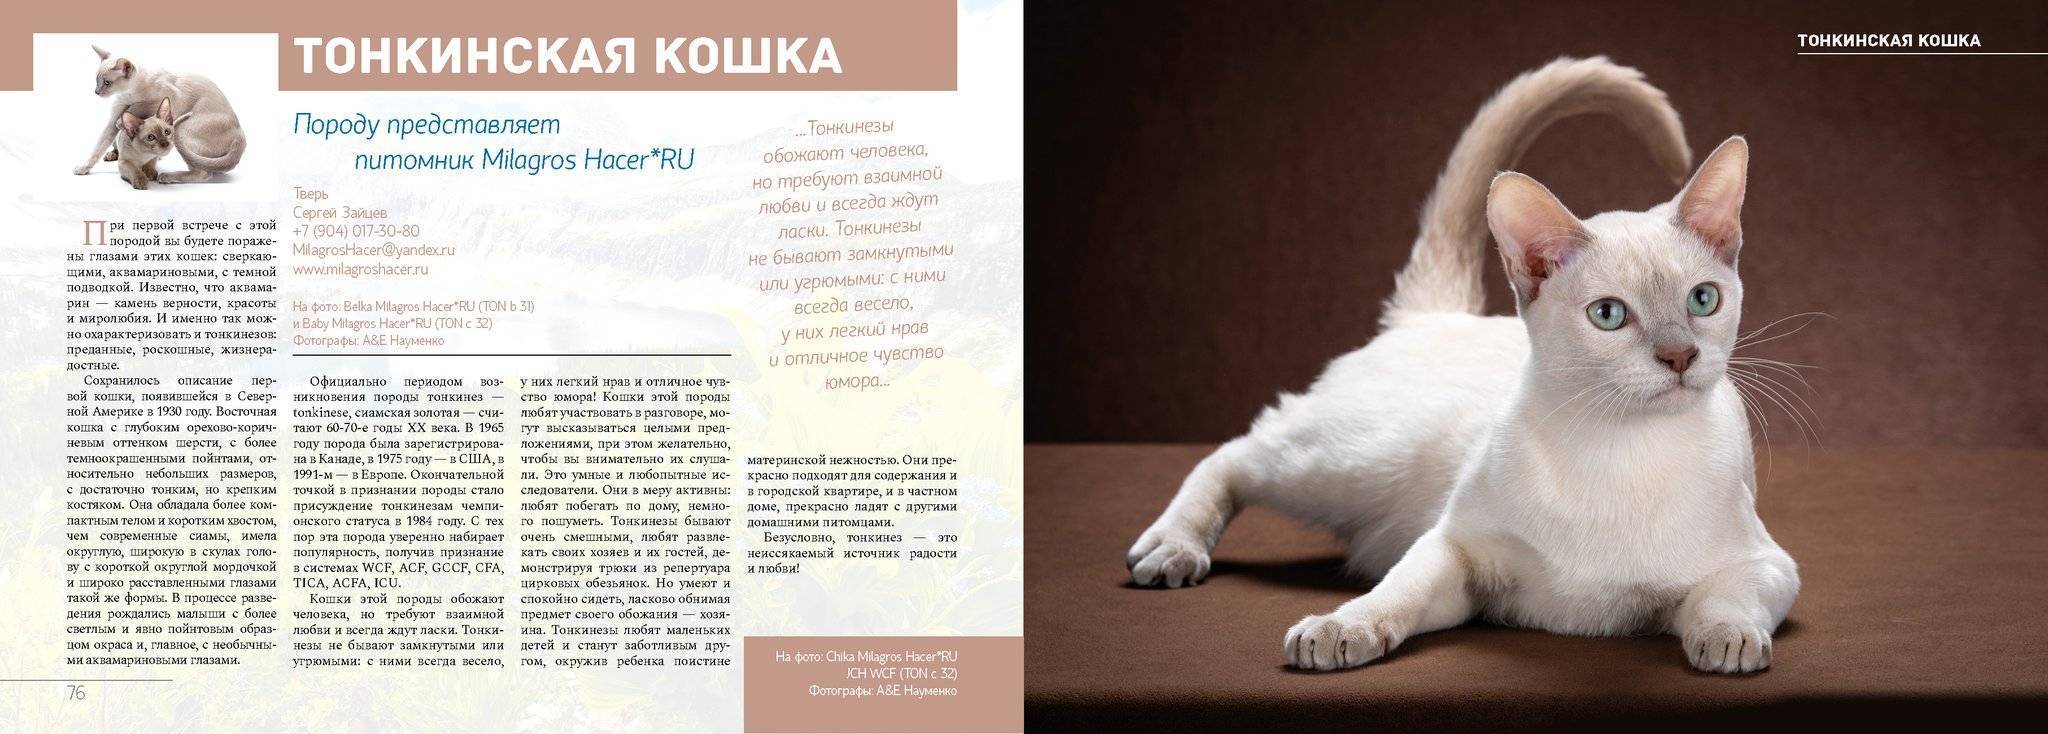 Турецкий ван: описание породы кошек с фото и видео